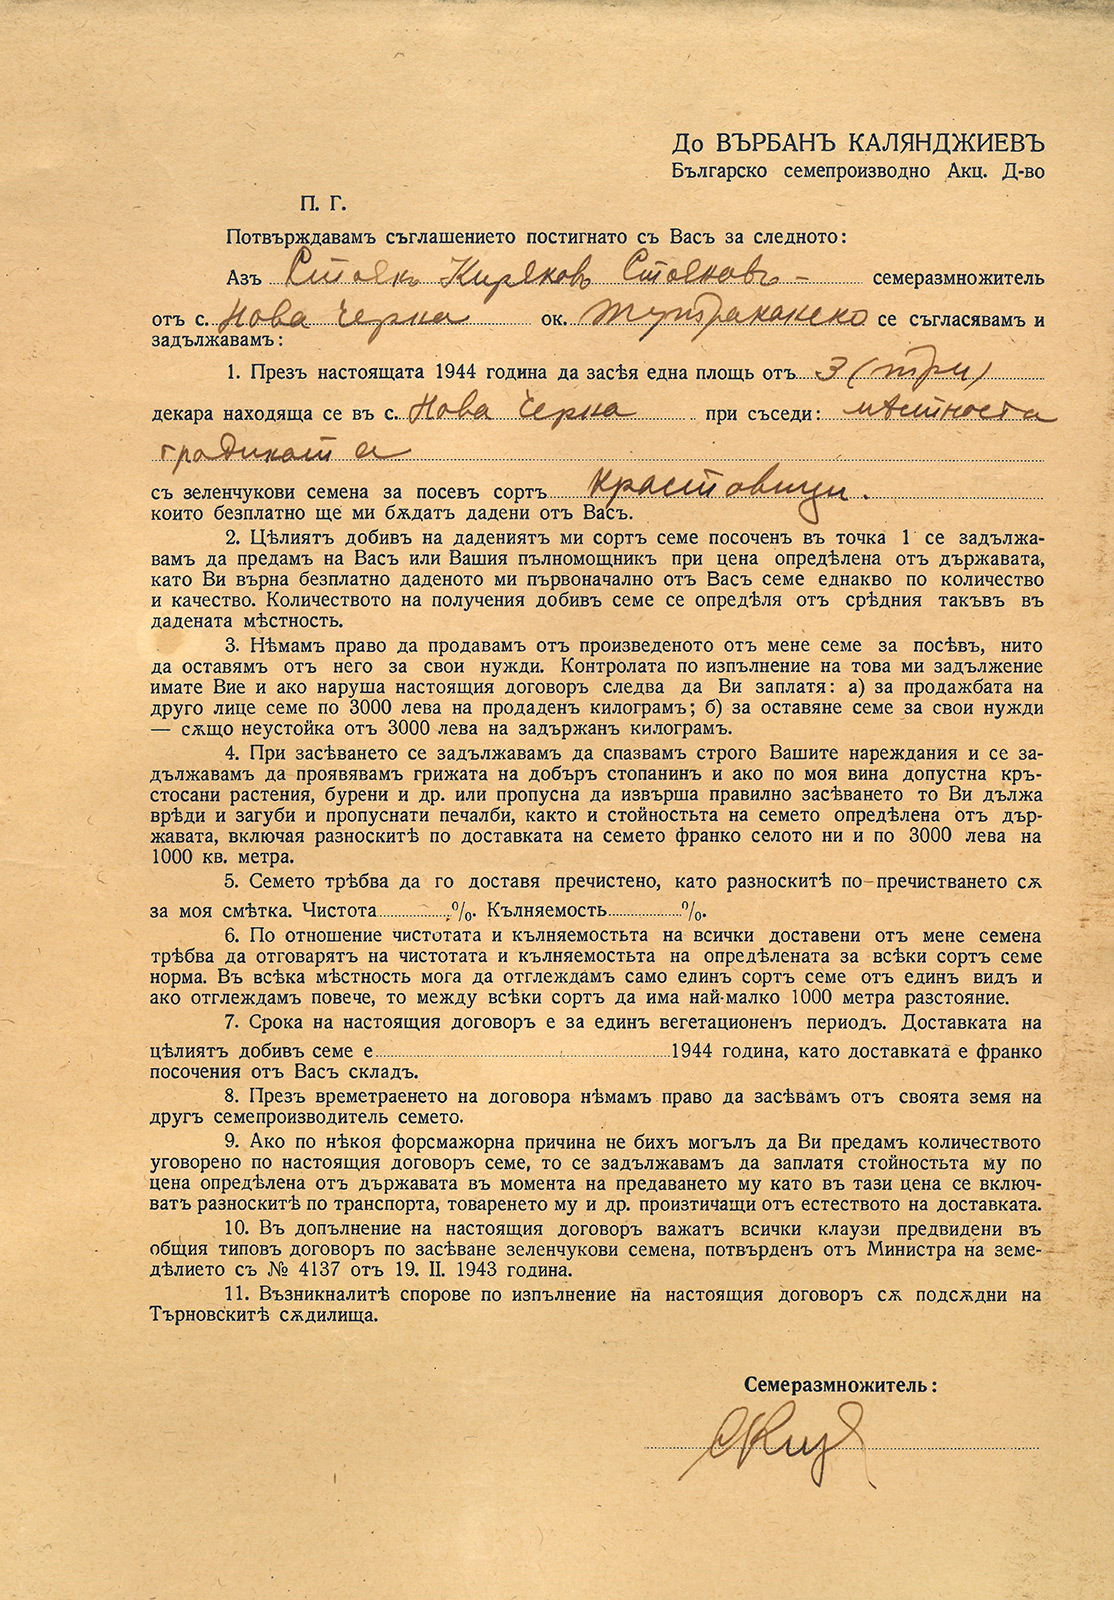 Договор със семепроизводител, Дружество „Върбан Калянджиев“